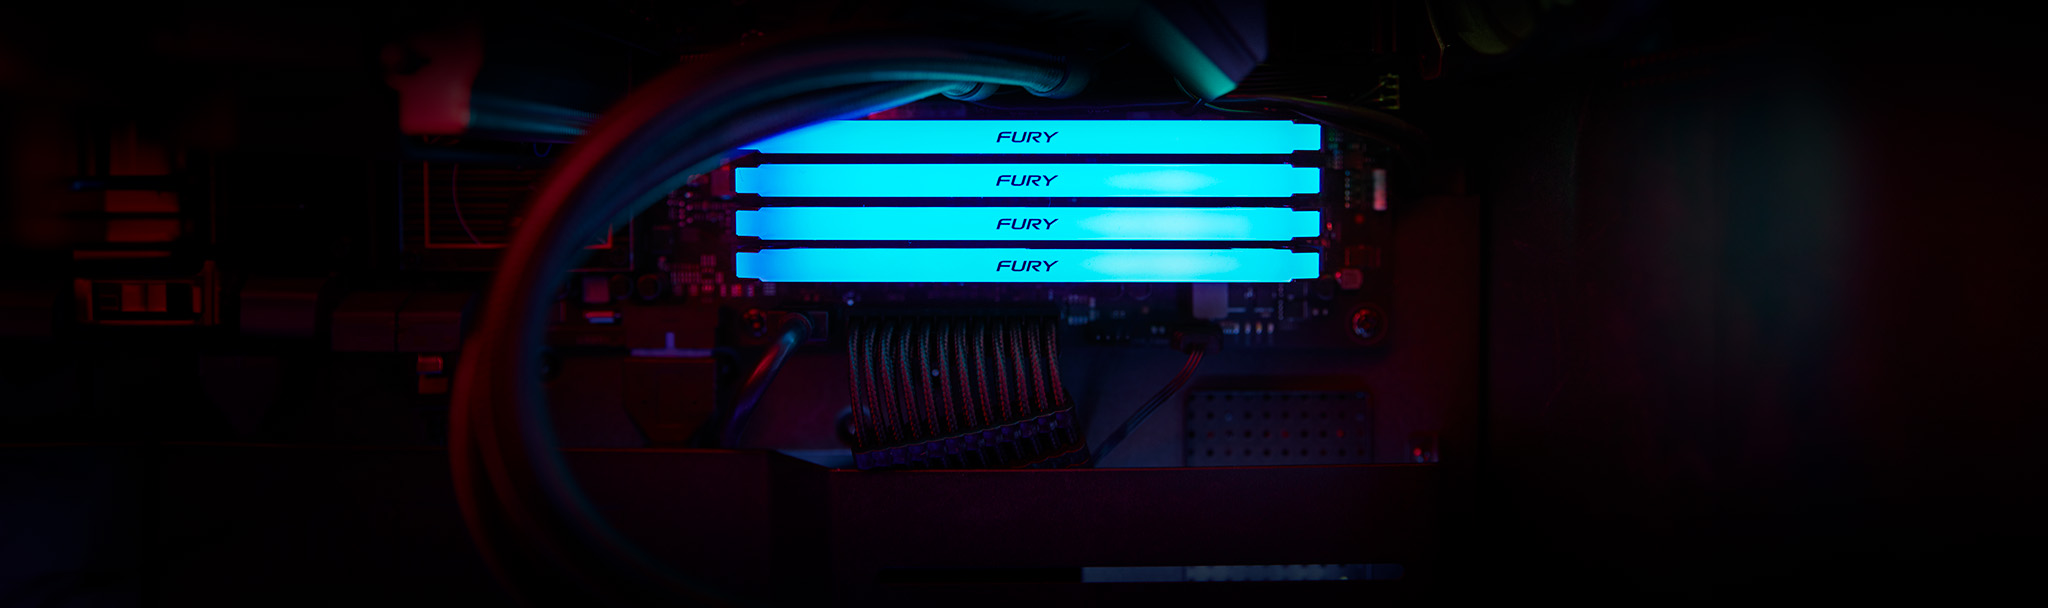 4 個 Kingston FURY Beast DDR4 RGB 模組在黑色電腦機殼中發出藍綠色光線效果。